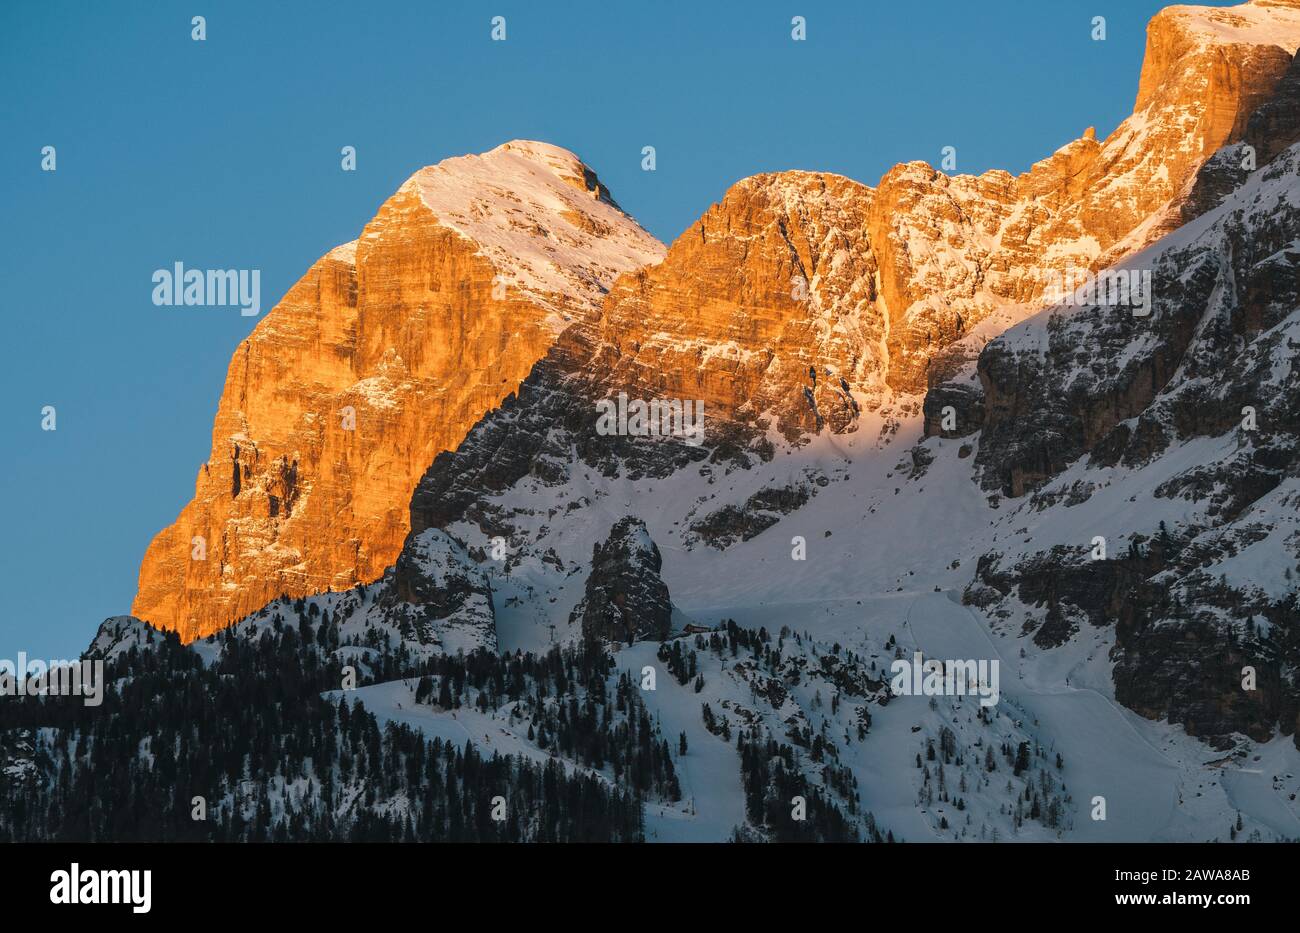 Tofana di Rozes oder Tofana i Peak in Cortina d'Ampezzo im Winter at Dawn, Schnee Bei Sonnenaufgang mit Morgenlicht und Skipisten Stockfoto